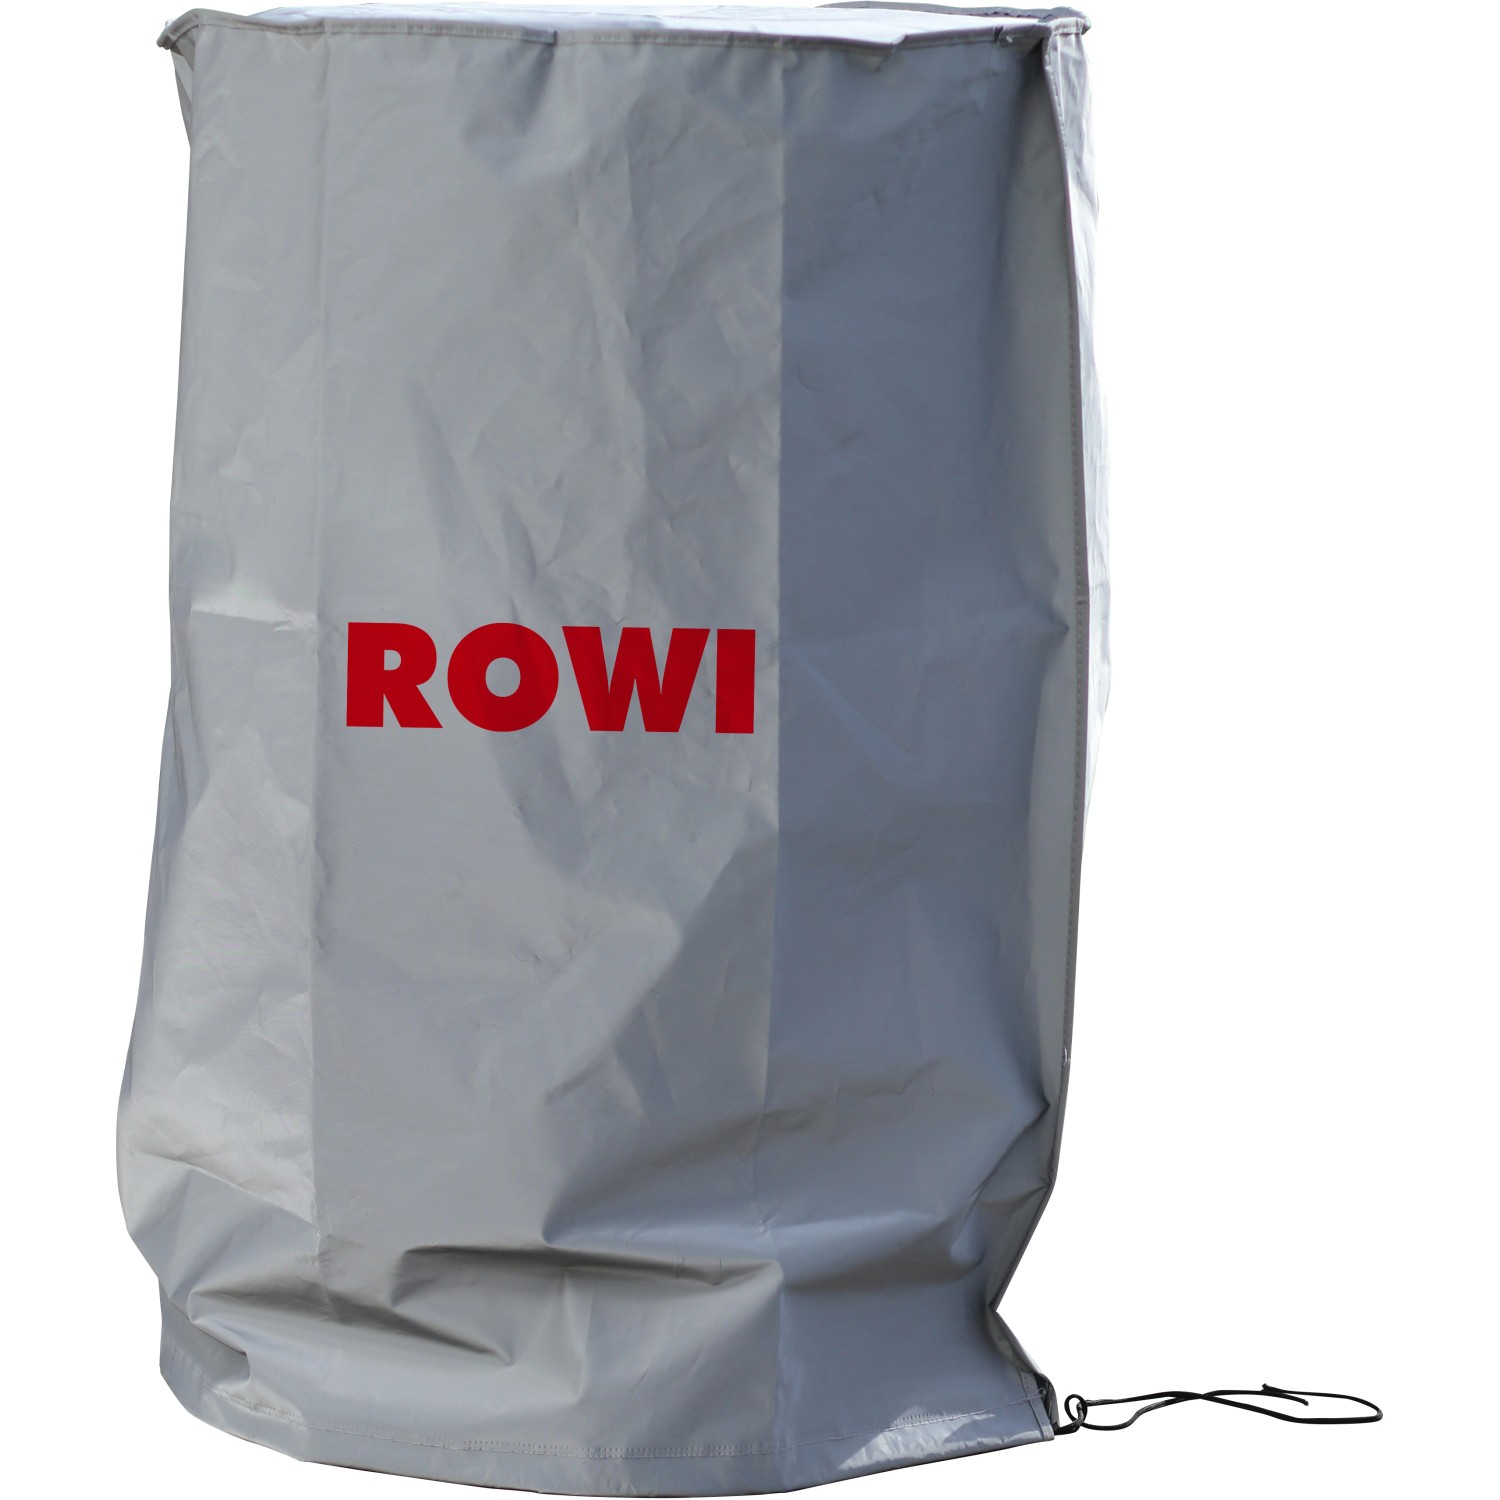 Rowi Schutzhülle HSH 1/1 für alle Rowi Gas-Heizöfen von Rowi